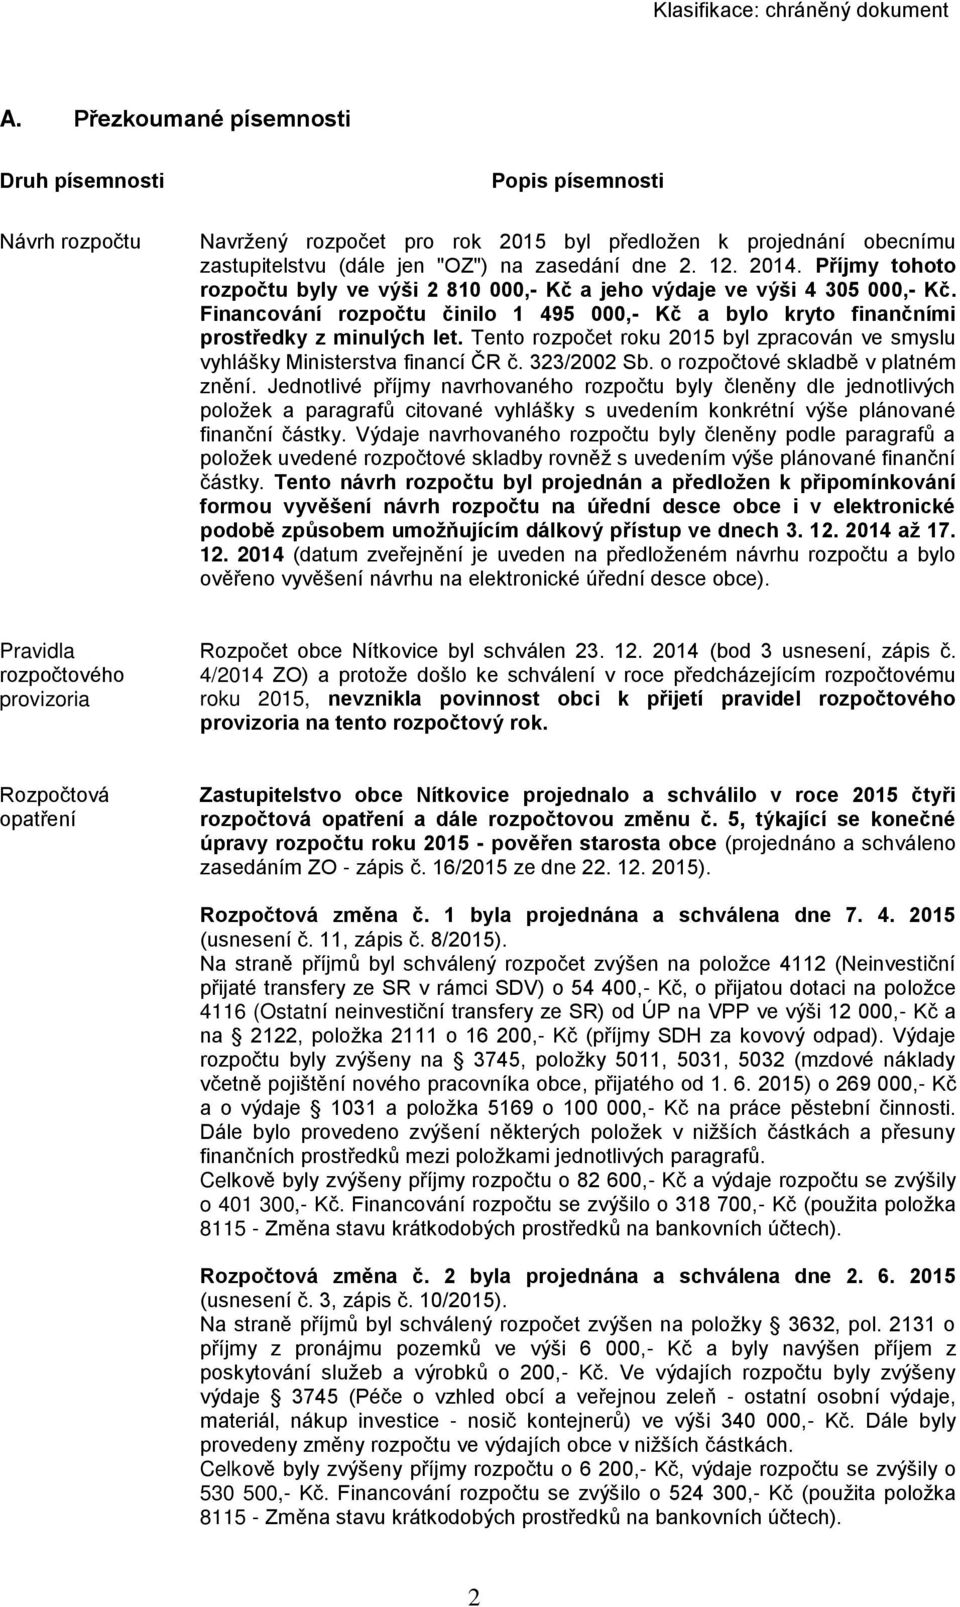 Tento rozpočet roku 2015 byl zpracován ve smyslu vyhlášky Ministerstva financí ČR č. 323/2002 Sb. o rozpočtové skladbě v platném znění.